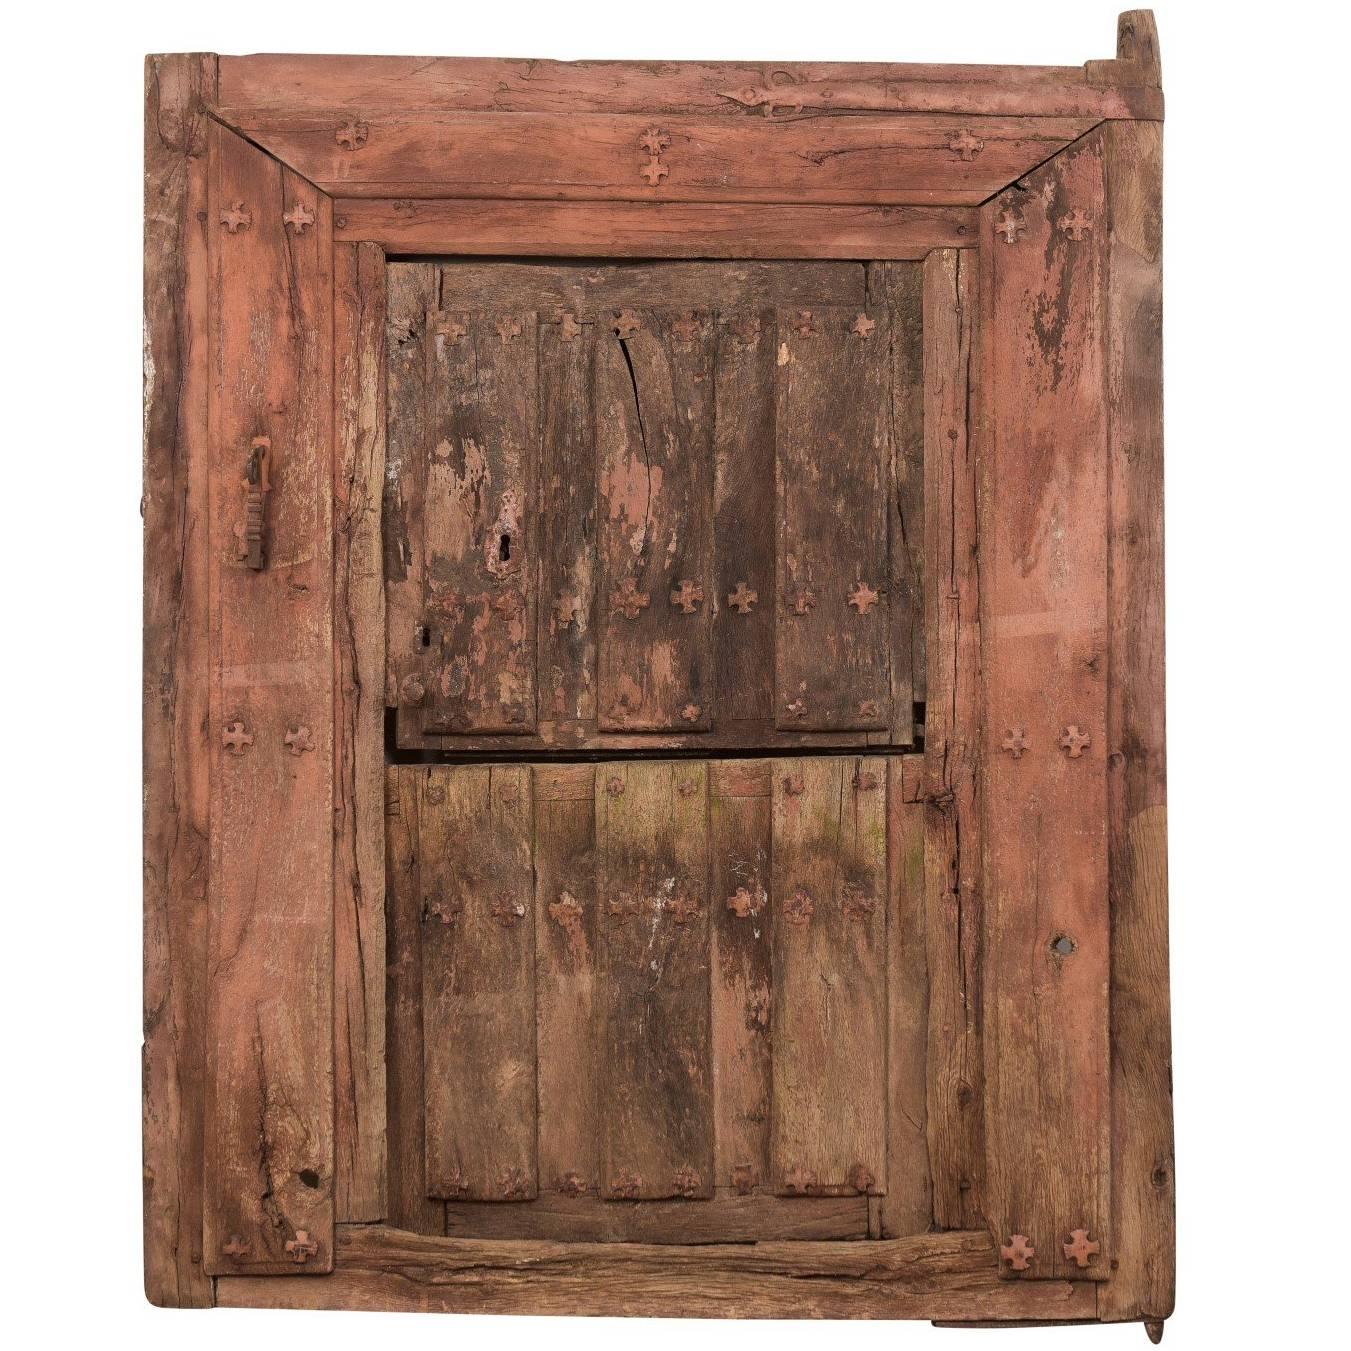 Spanische geteilte Tür aus Holz und Eisen aus dem 18. Jahrhundert mit originalem Gehäuse